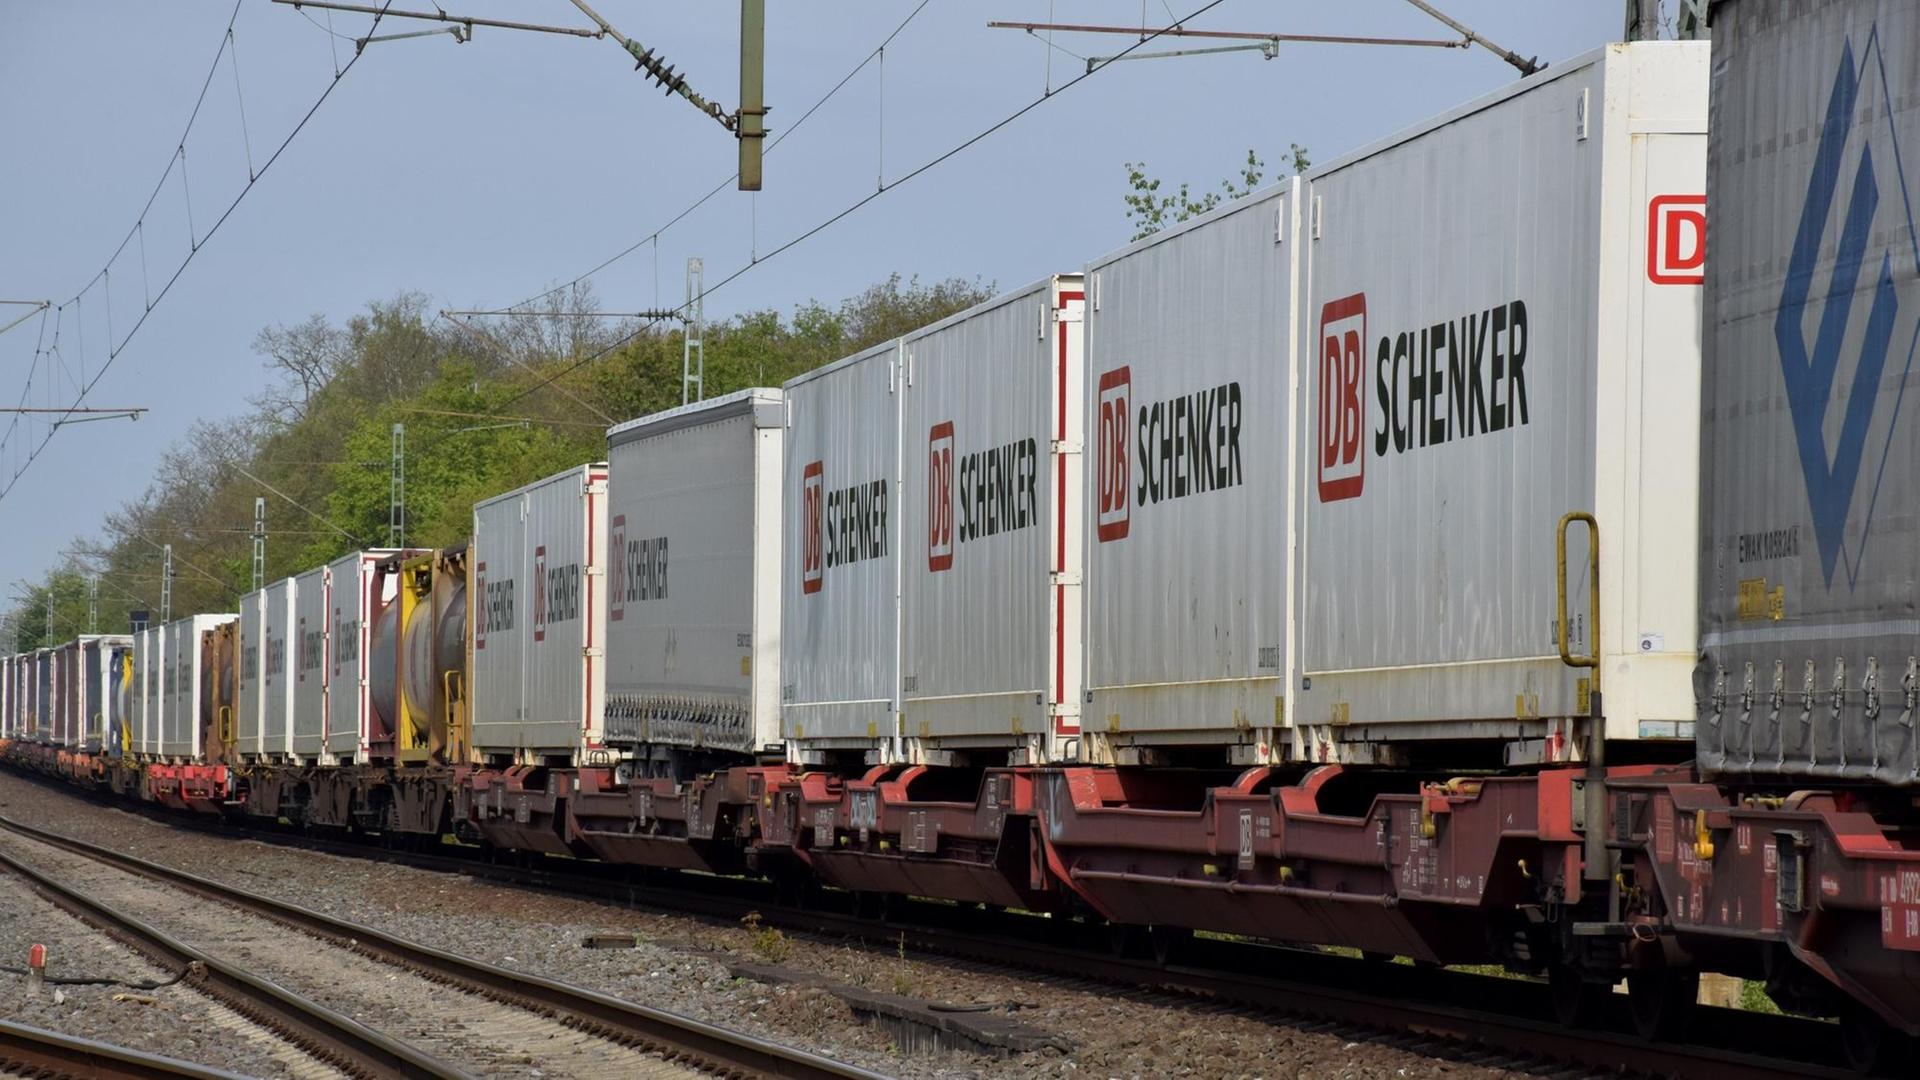 Ein Abschnitt des Zuges ist schräg von der Seite auf einer Schiene fotografiert. Die Container sind weiß und haben die Aufschrift "DB Schenker".